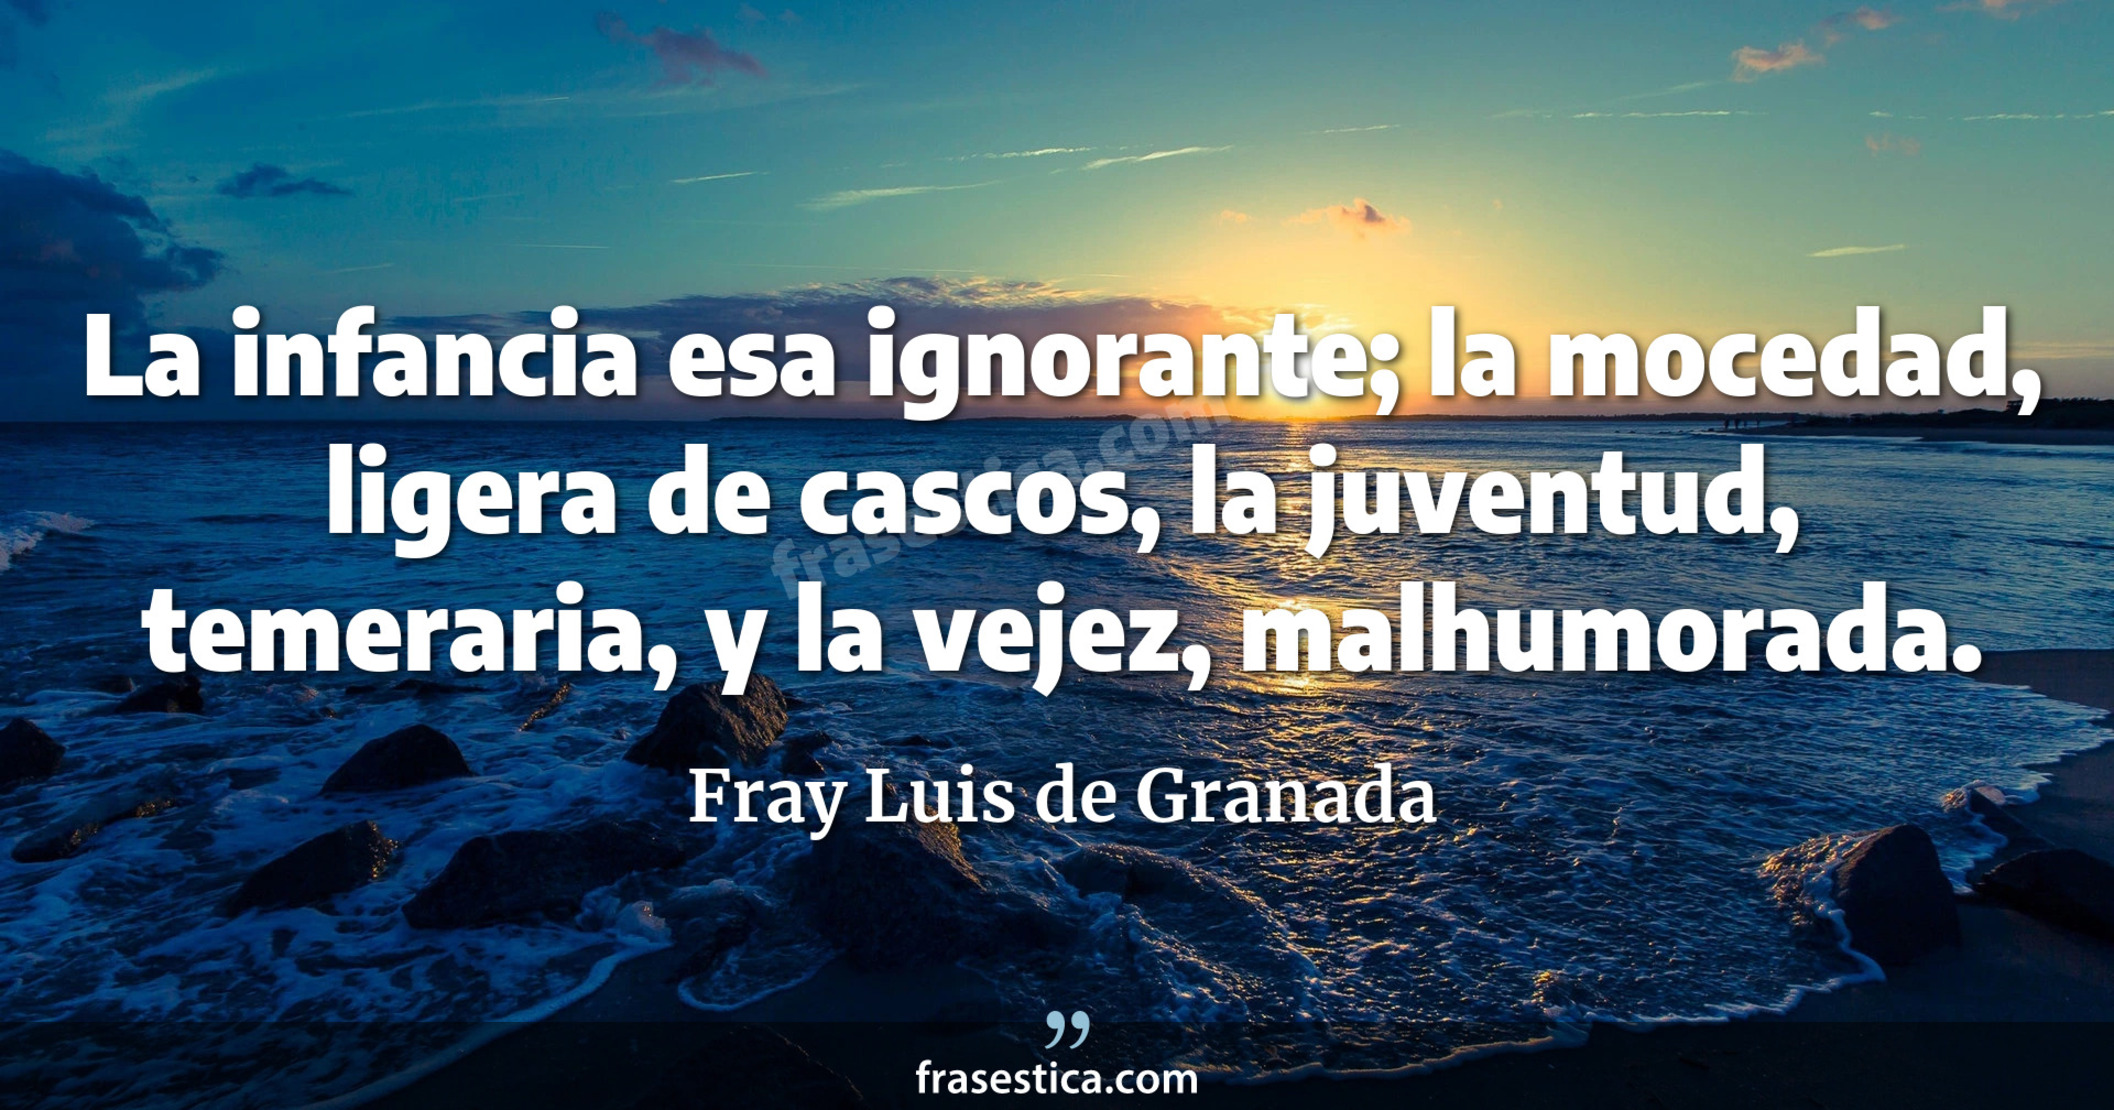 La infancia esa ignorante; la mocedad, ligera de cascos, la juventud, temeraria, y la vejez, malhumorada. - Fray Luis de Granada